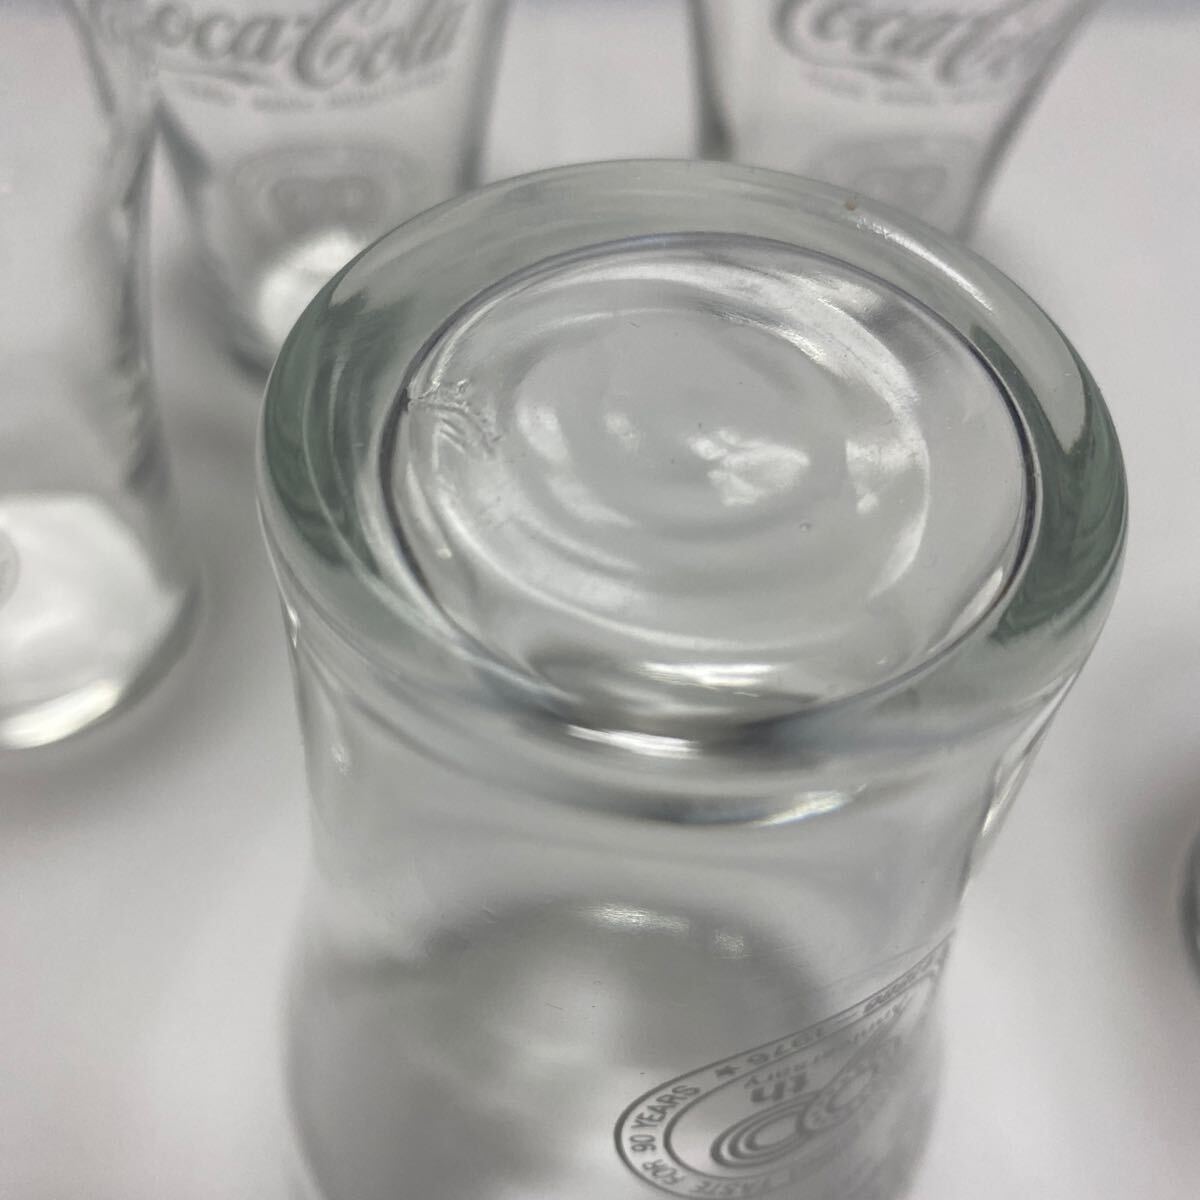  прекрасный товар retro Coca * Cola gla лопата 5 шт совместно 90 anniversary commemoration стеклянный товар 